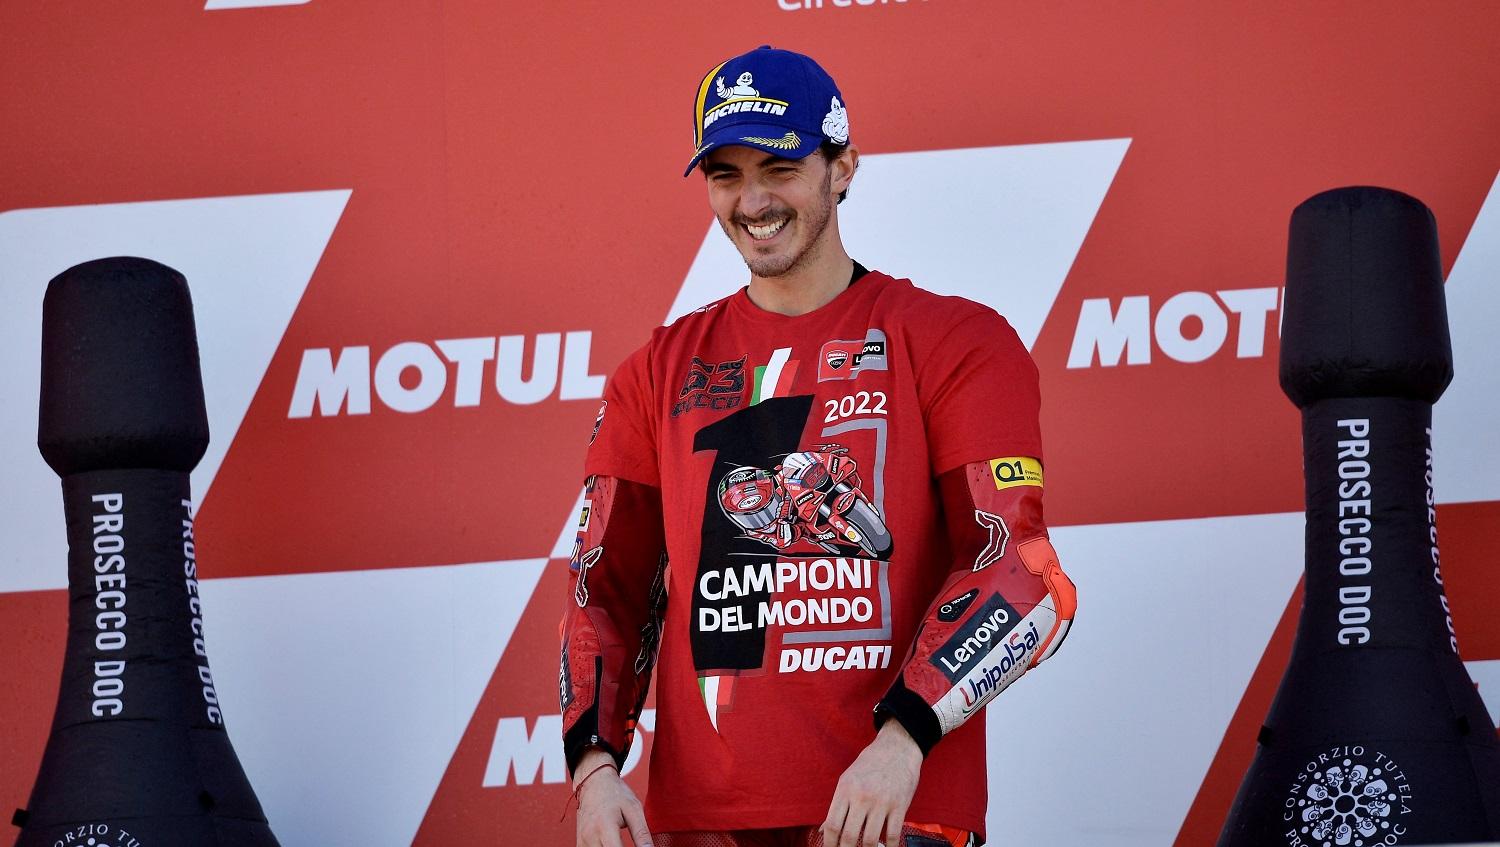 Pembalap Ducati Lenovo, Francesco Bagnaia, yang baru saja resmi menjadi juara dunia MotoGP 2022 sudah dibikin tegang untuk menghadapi kompetisi di musim depan. - INDOSPORT